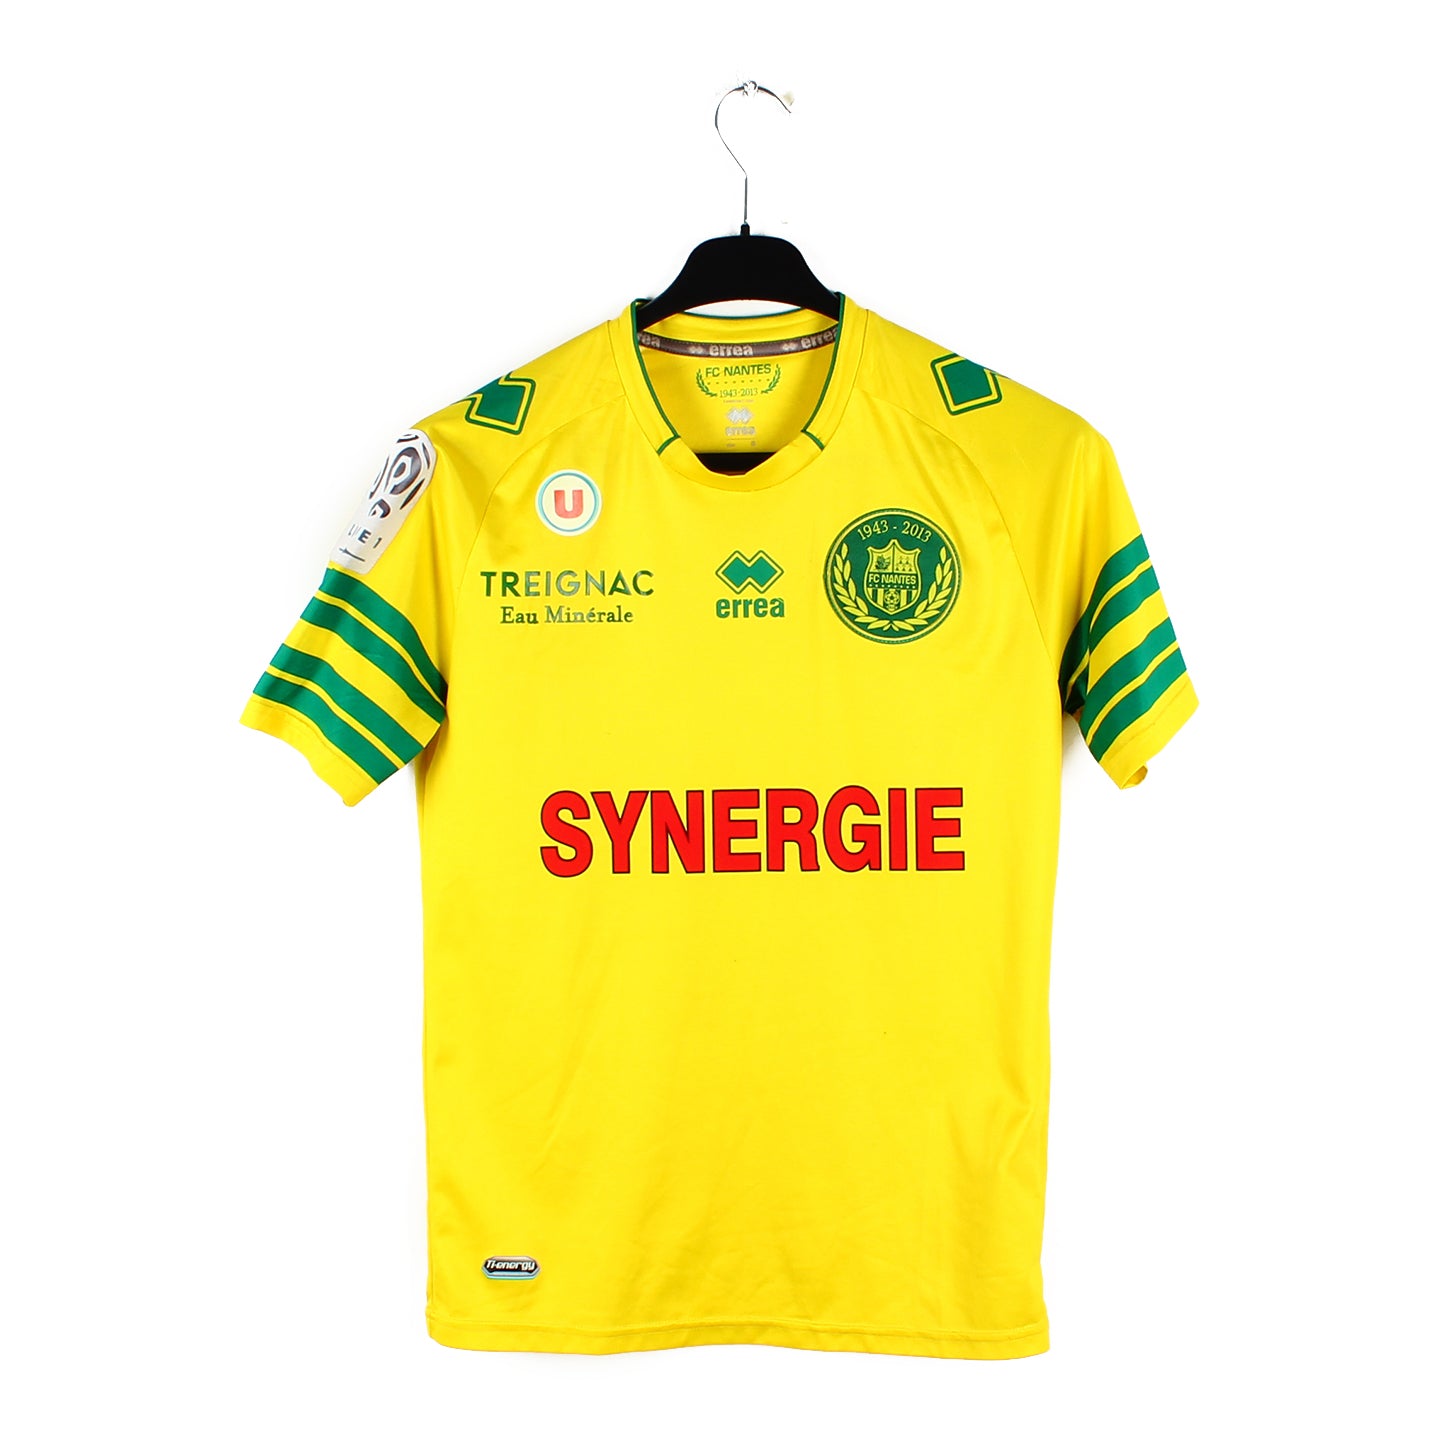 Le FC Nantes présente le 1er maillot de football recyclé, consigné